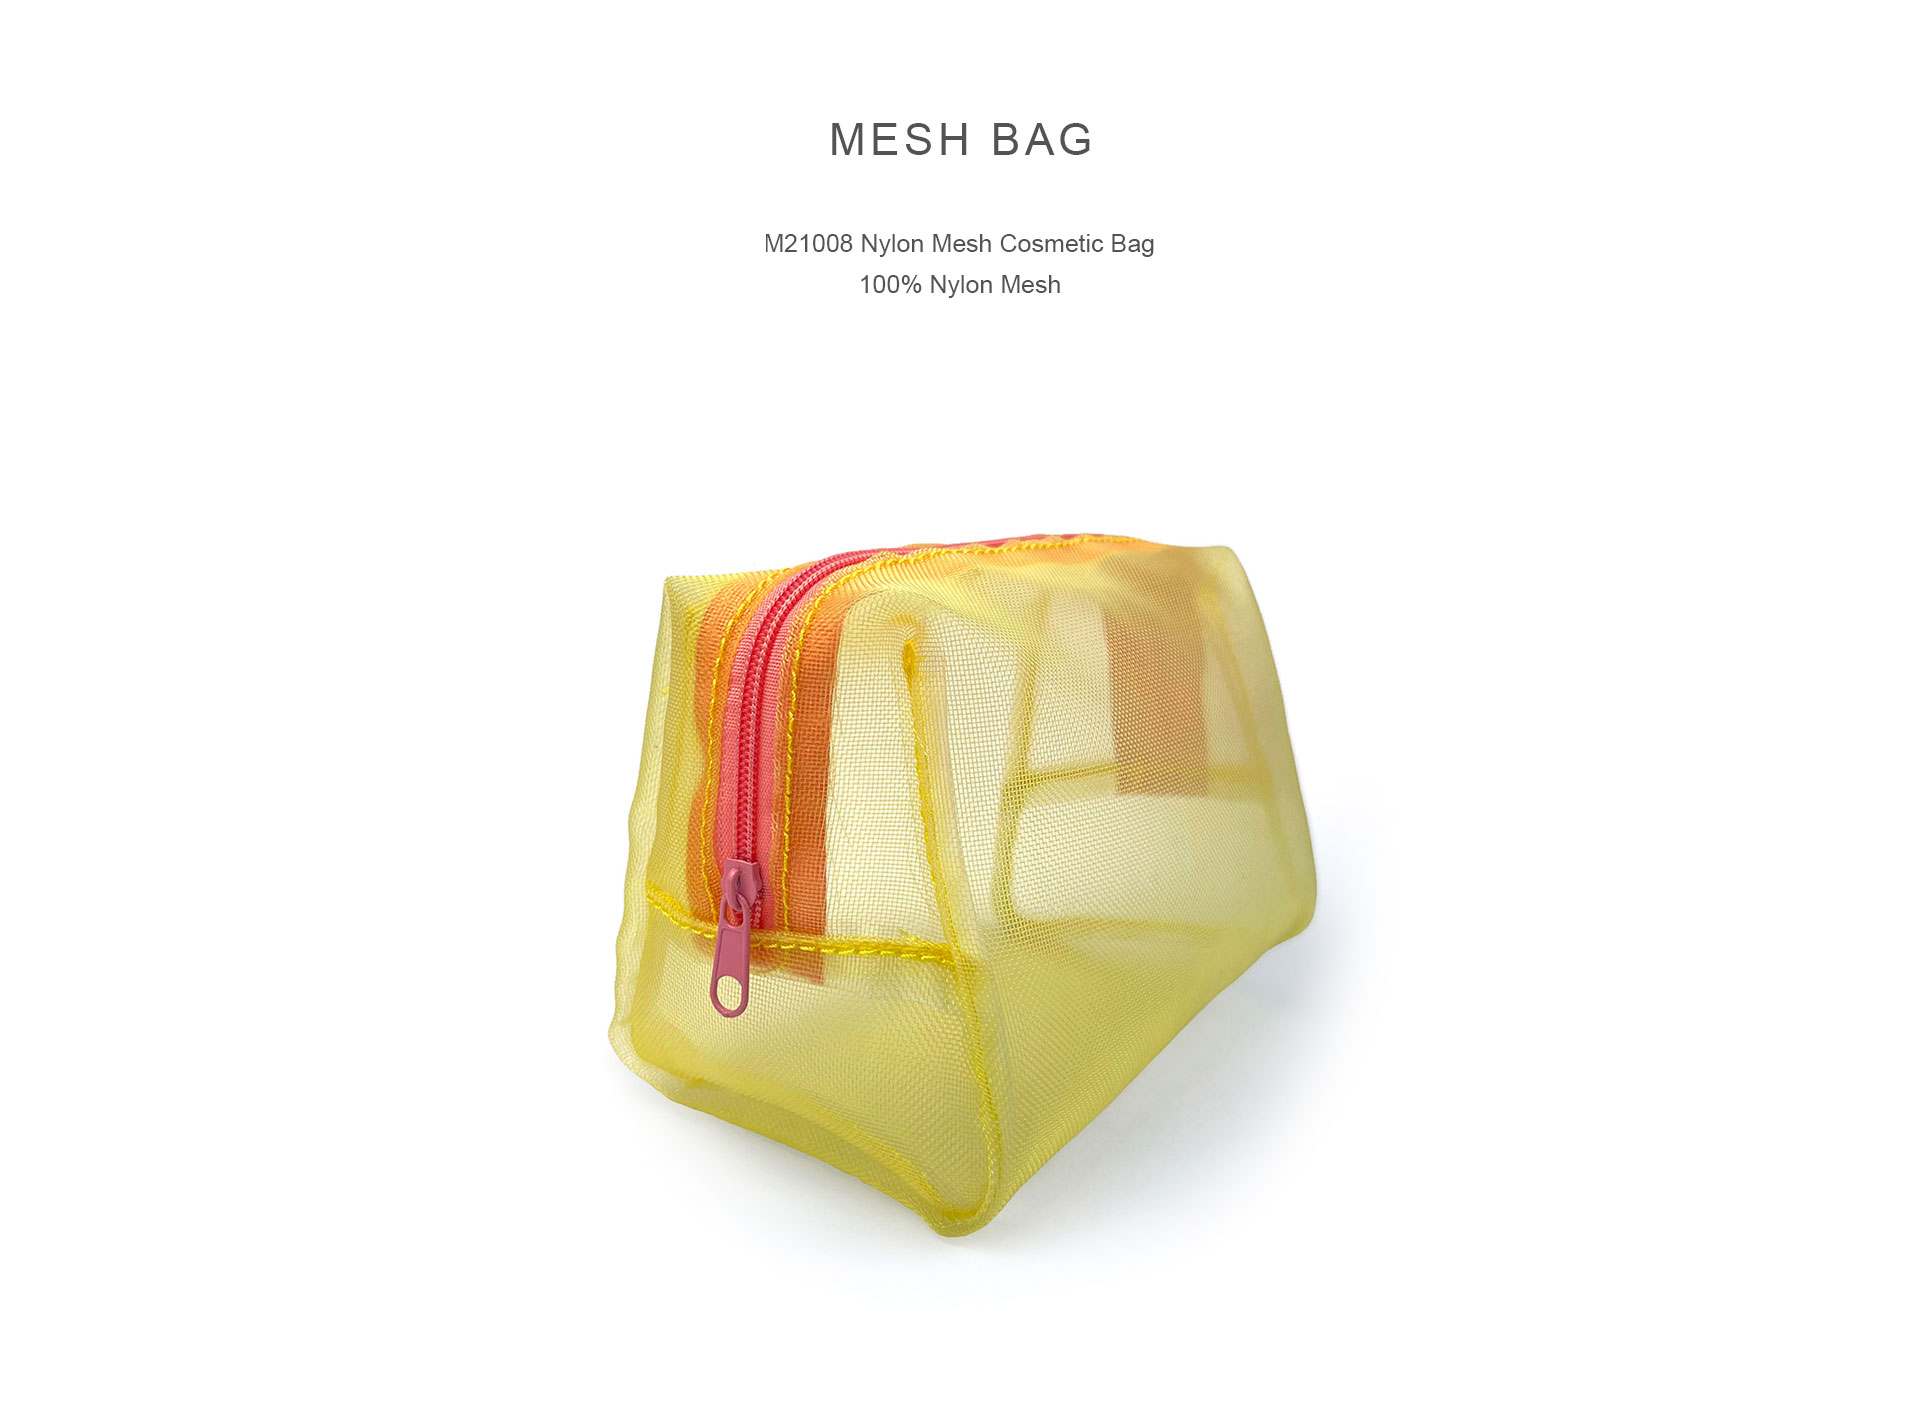 M21008 Nylon Mesh Cosmetic Bag